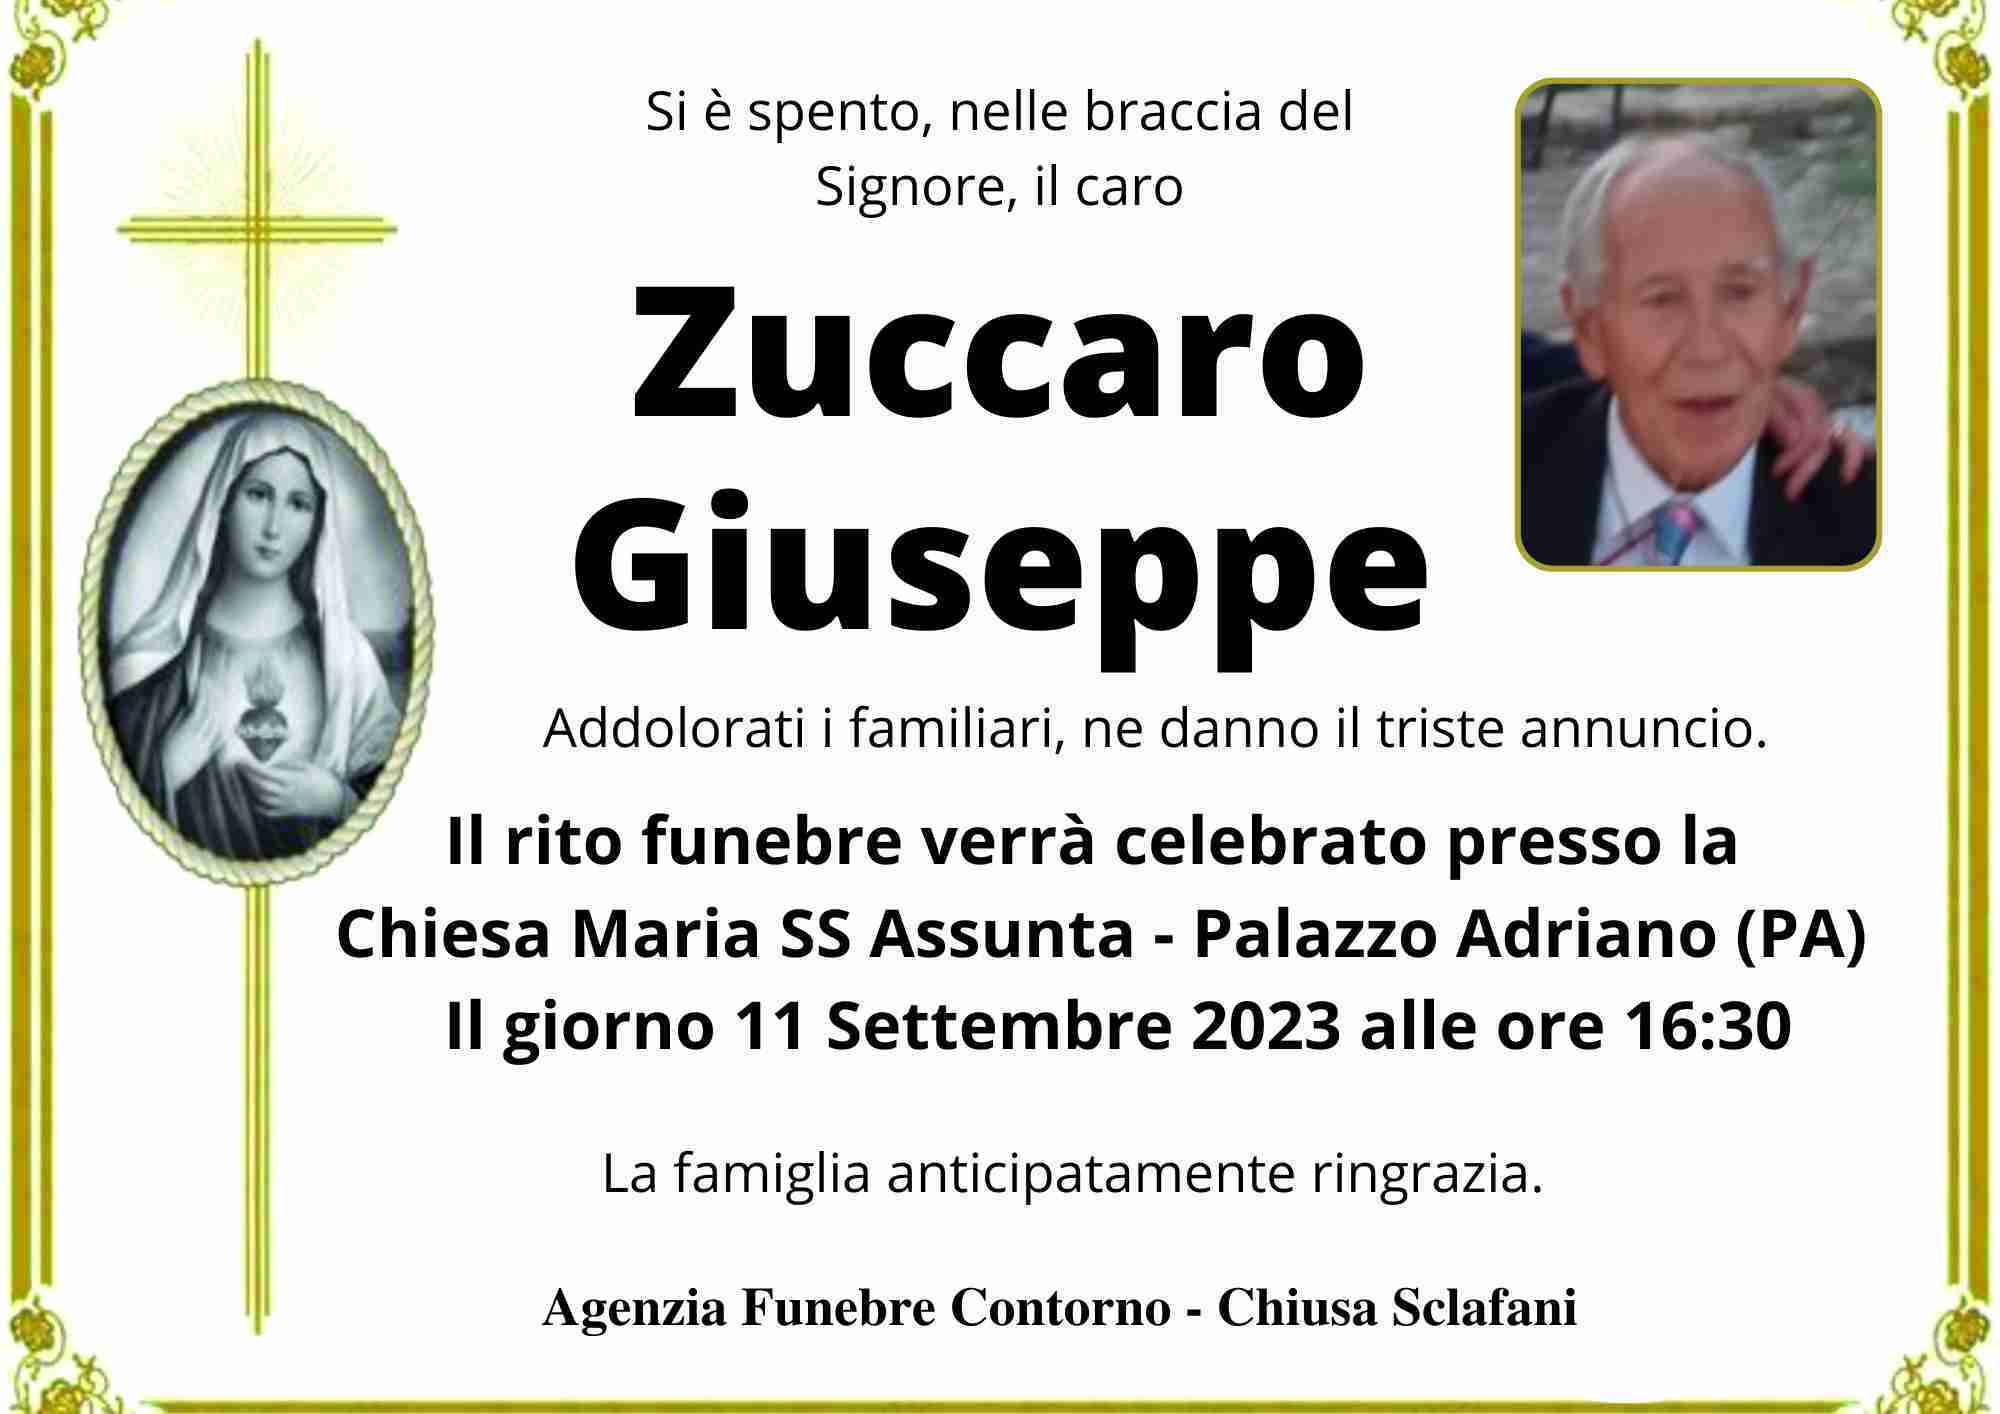 Giuseppe Zuccaro